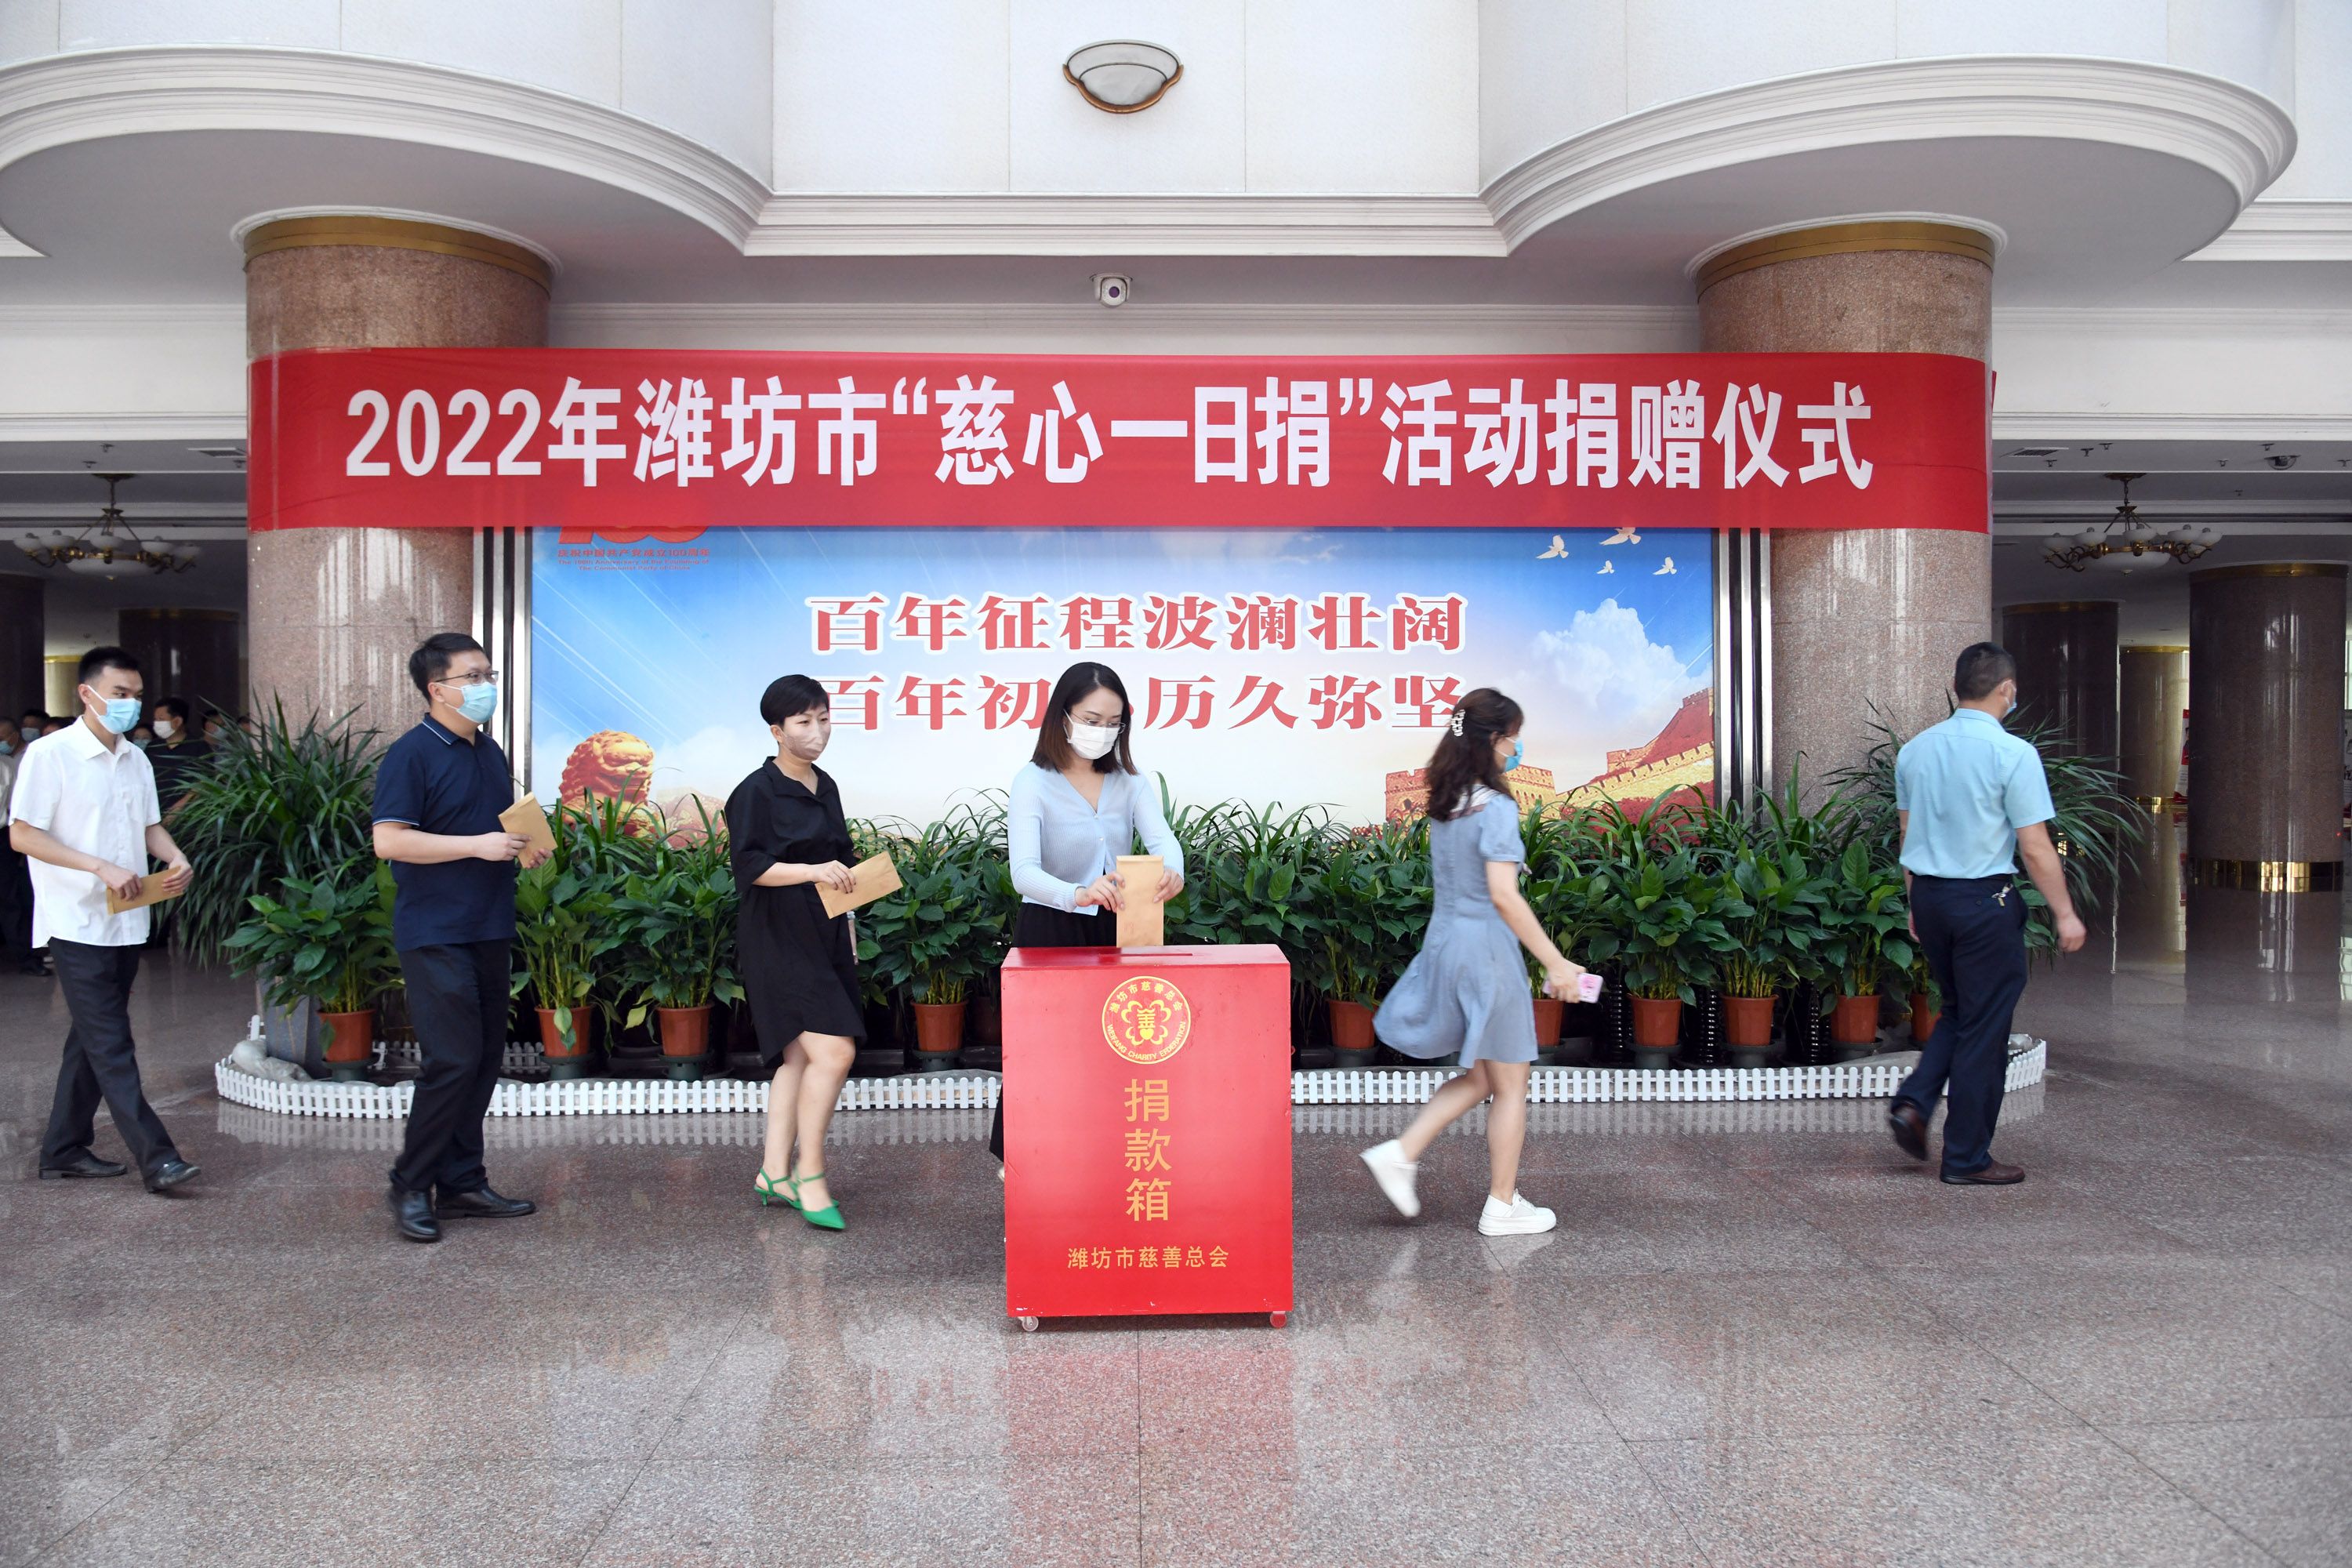 2022年潍坊市“慈心一日捐”捐款仪式成功举行